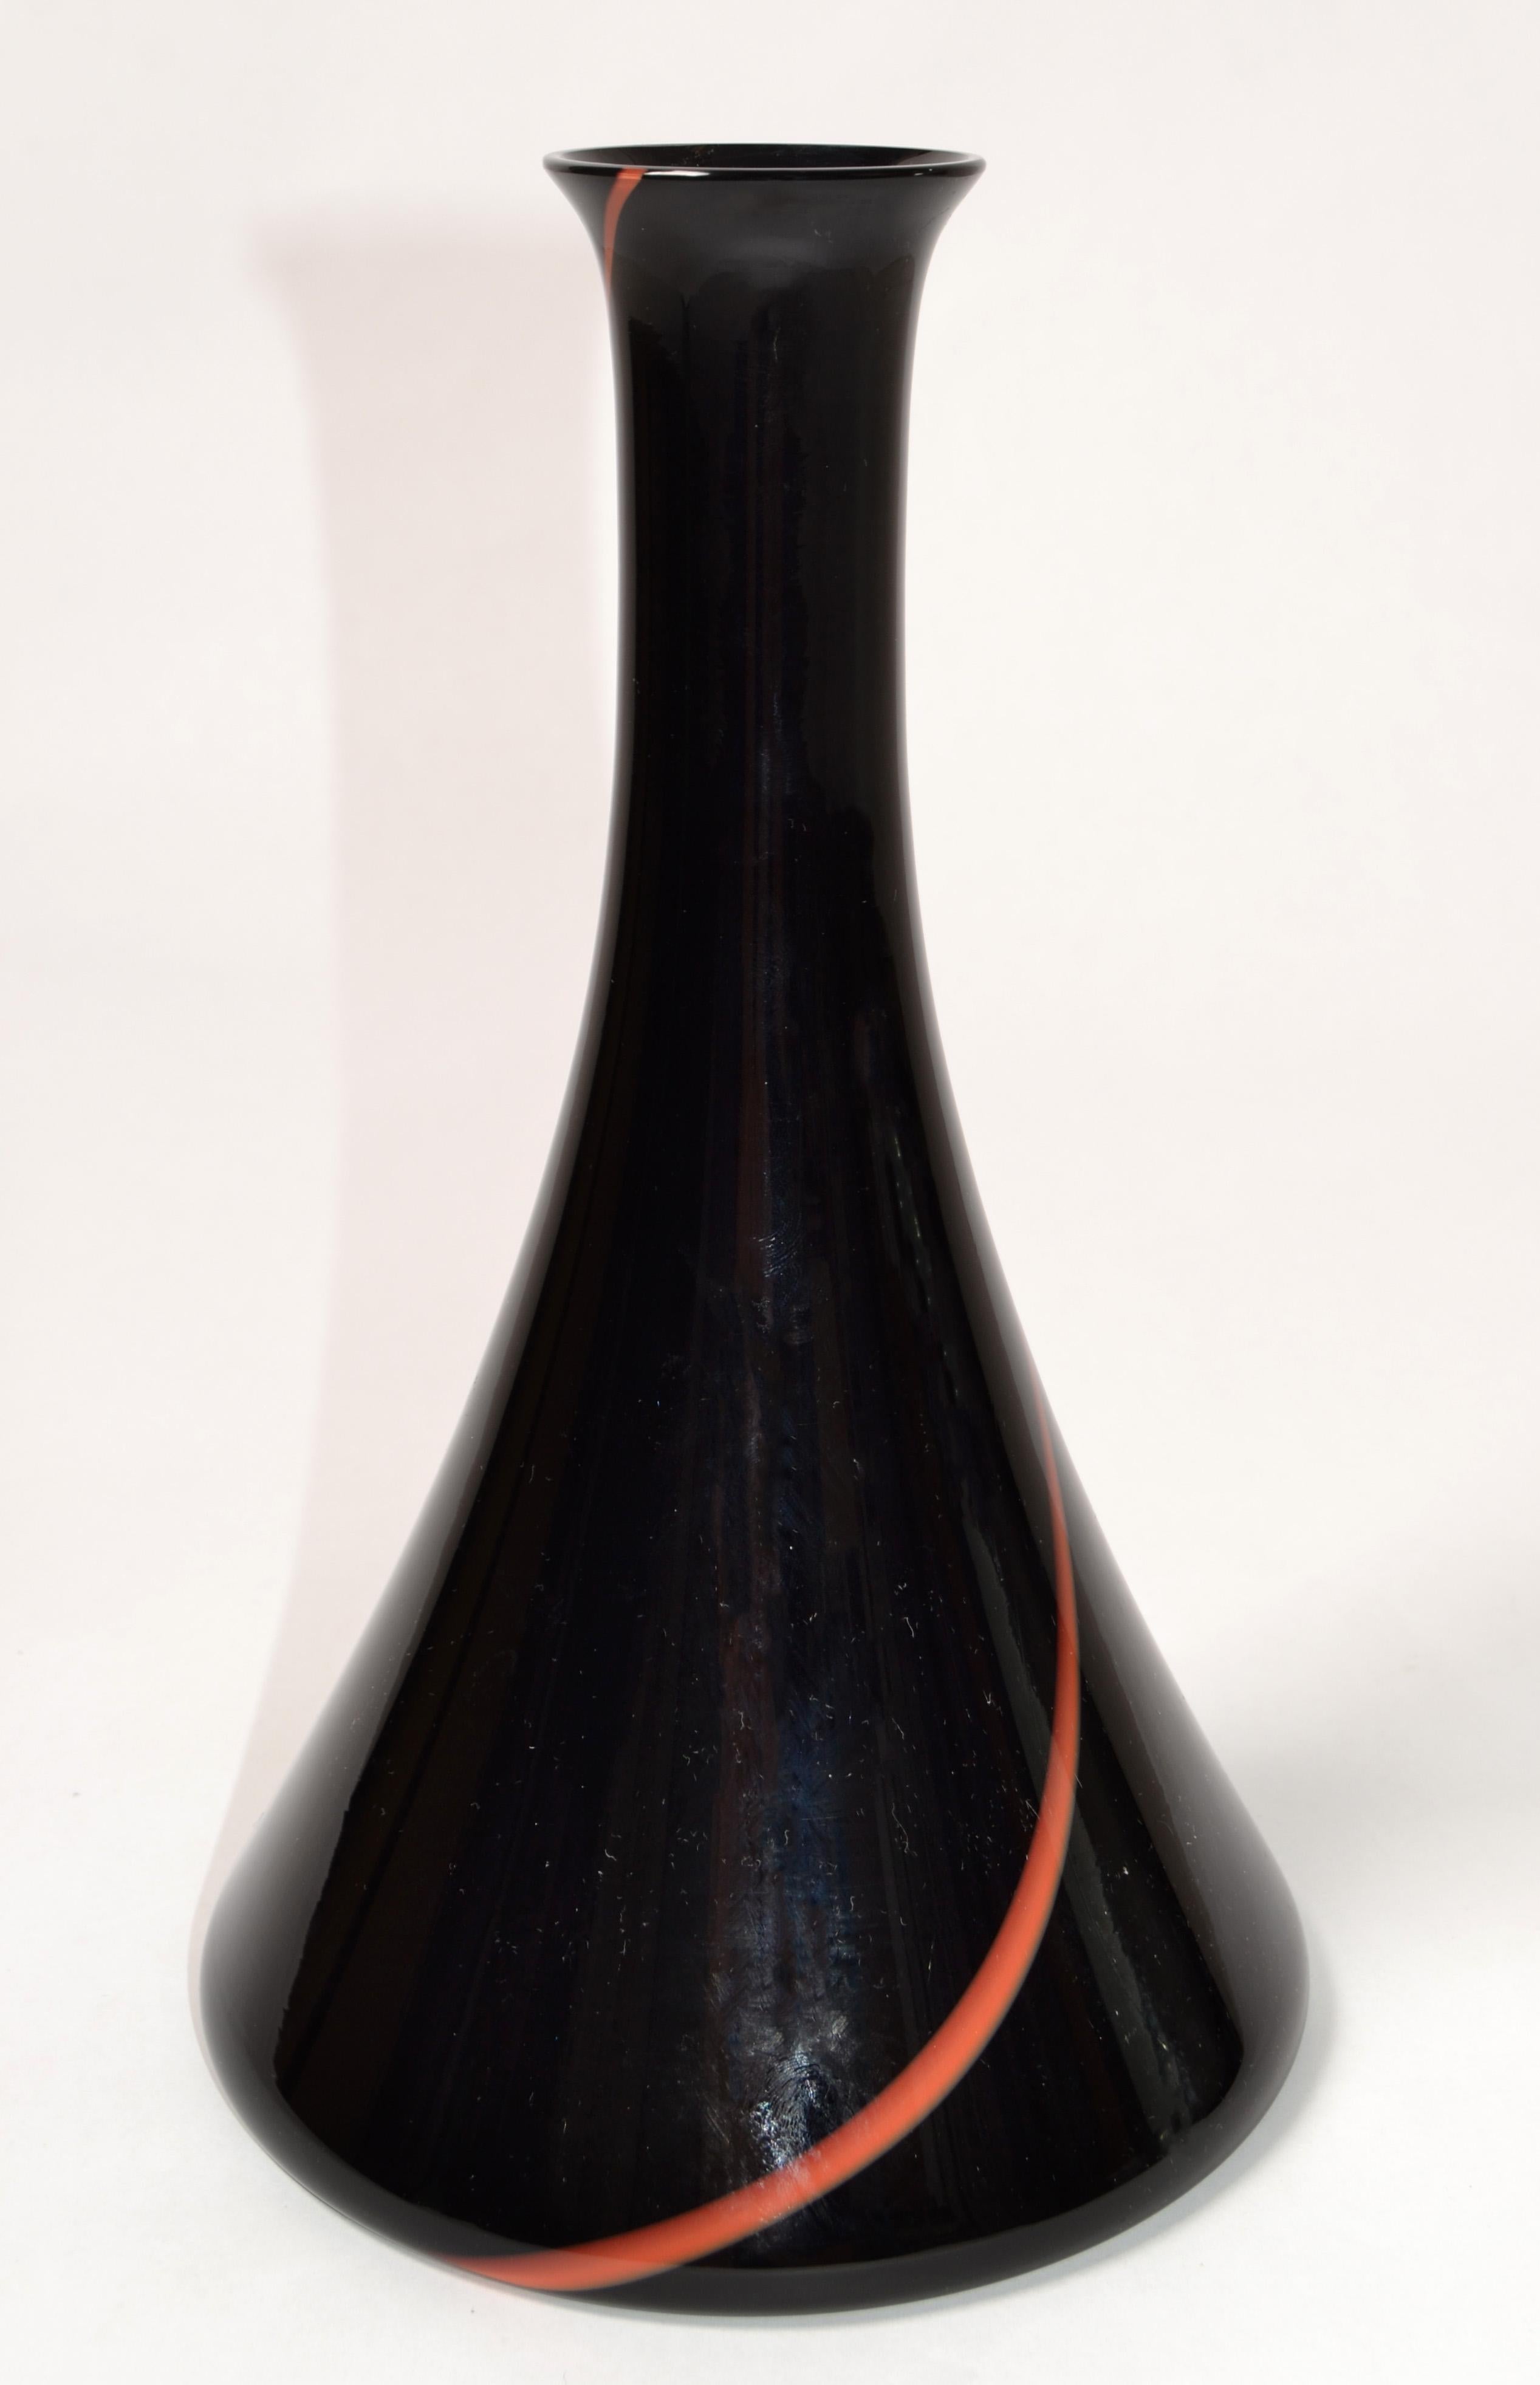 VeArt Italy, Mid-Century Modern swirl red and black Murano Art Glass vase in a tall cone round vessel shape.
Labellisé au sommet avec une étiquette en feuille d'argent et gravé à la base, VeArt Venice.
L'ouverture mesure 1.5 pouces de diamètre.
Un